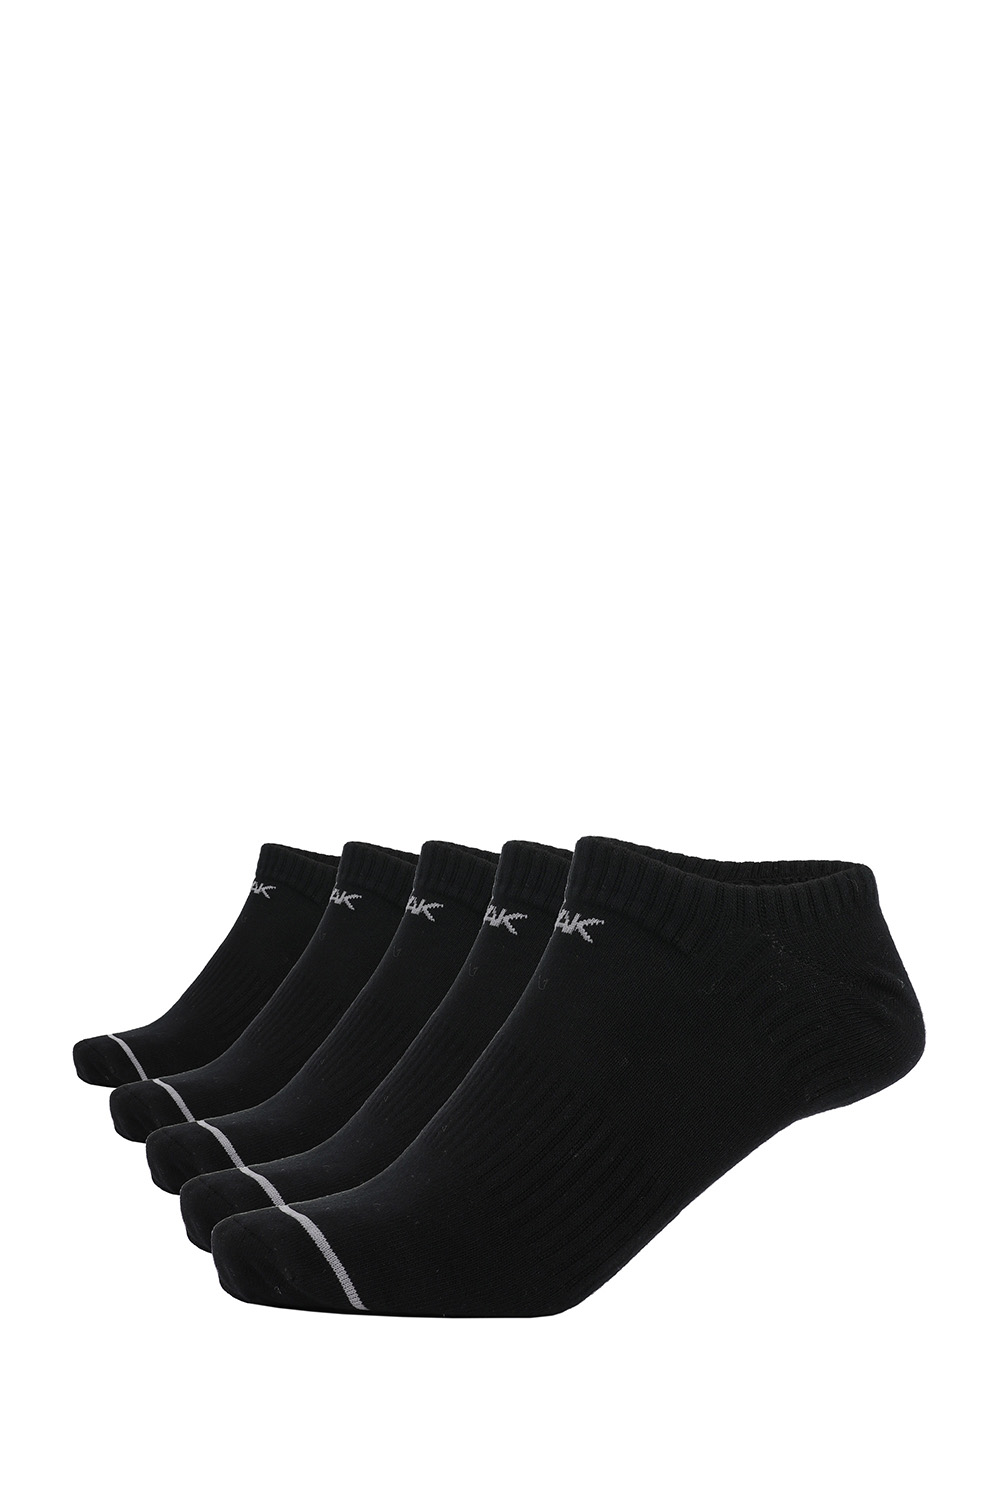 PEAK Anklet Socks Stripe - 5er Pack